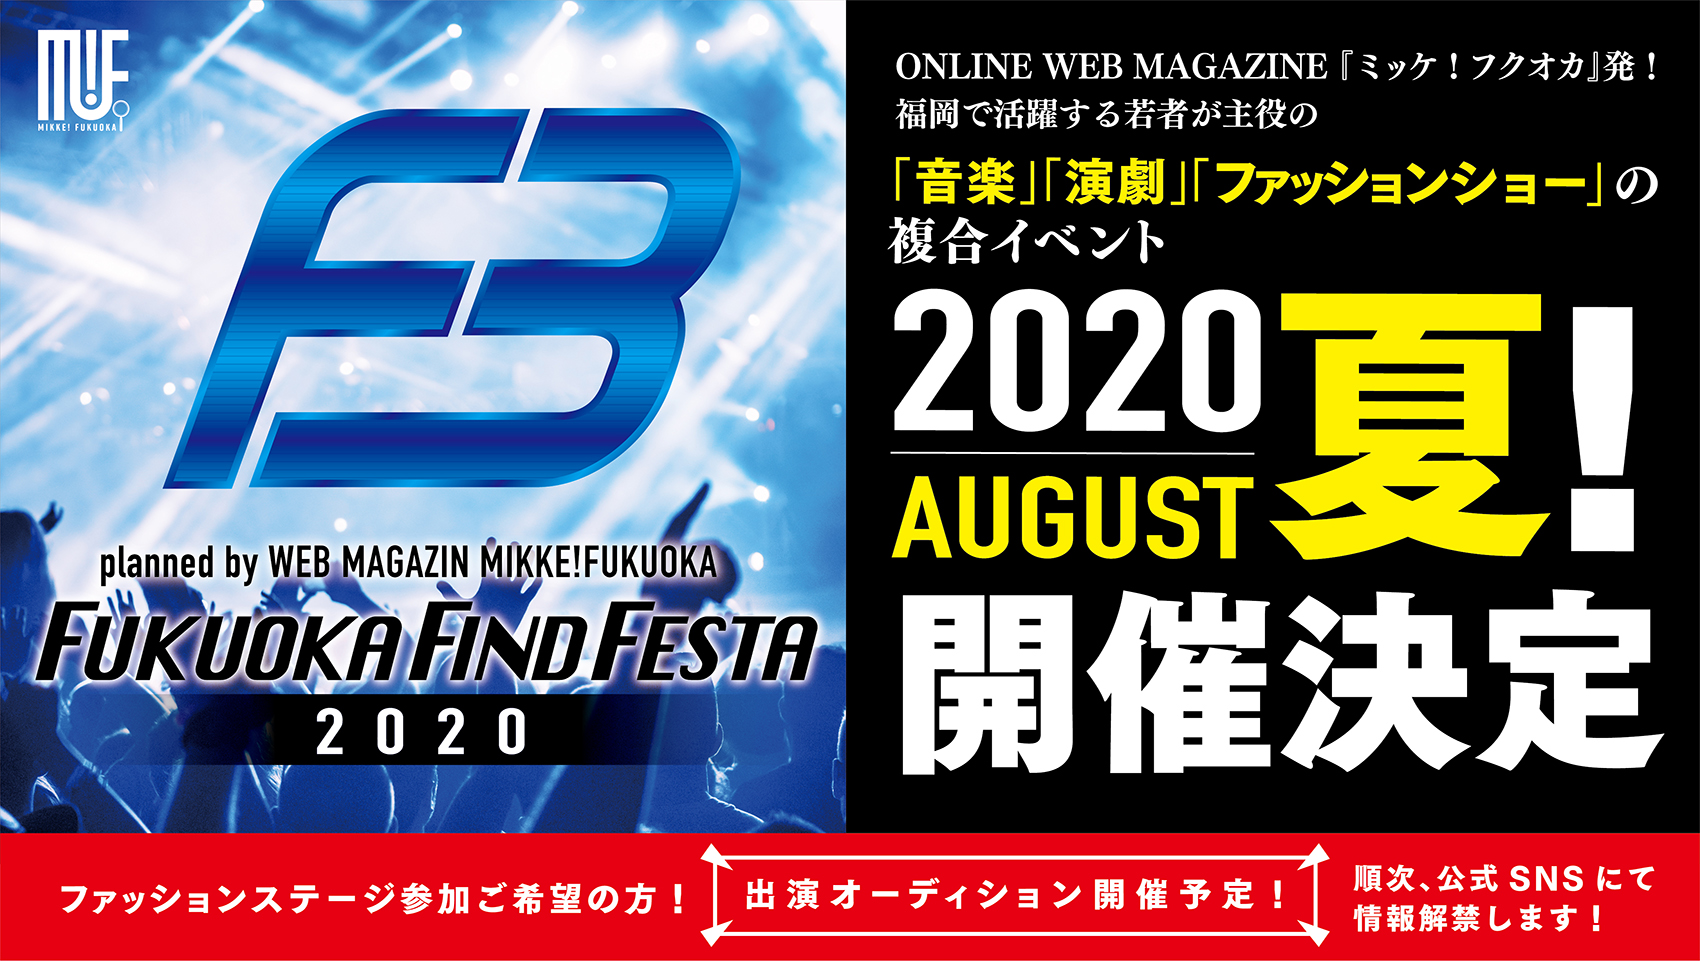 Webマガジン ミッケ フクオカ Vol 9の終面 編集長のnoteでも告知していますが 音楽 演劇 ファッションショー Aの複合イベント Fukuoka Find Festa を年8月に開催いたします T Co Aib9wrskrn オーディション情報など詳細は